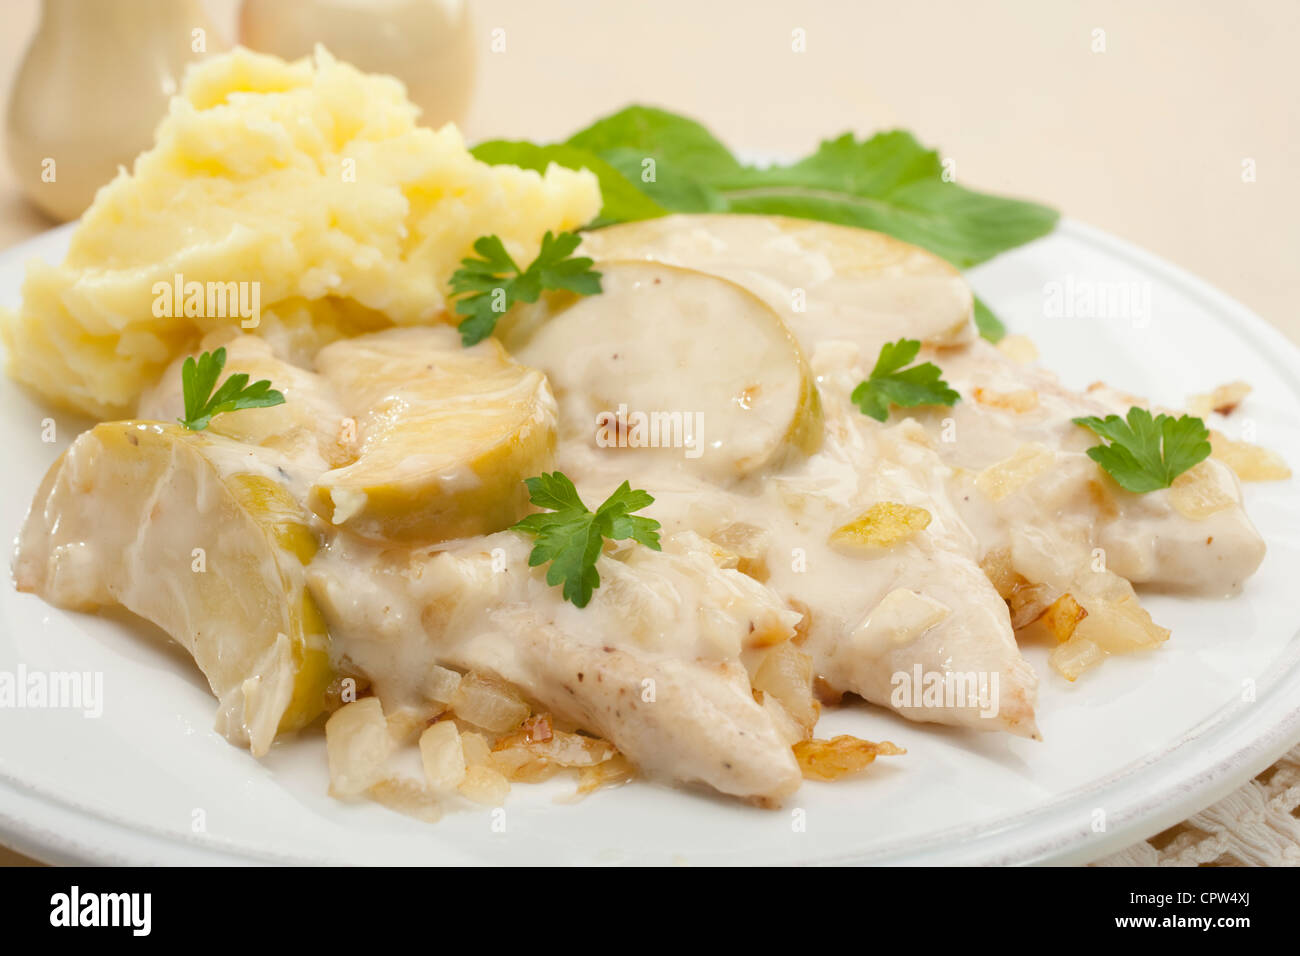 Ein französisches Gericht, Normandie Huhn ist mit Muskat gewürzt und gekocht mit Äpfeln und Zwiebeln in einer Sahne-Apfelwein-Sauce. Stockfoto